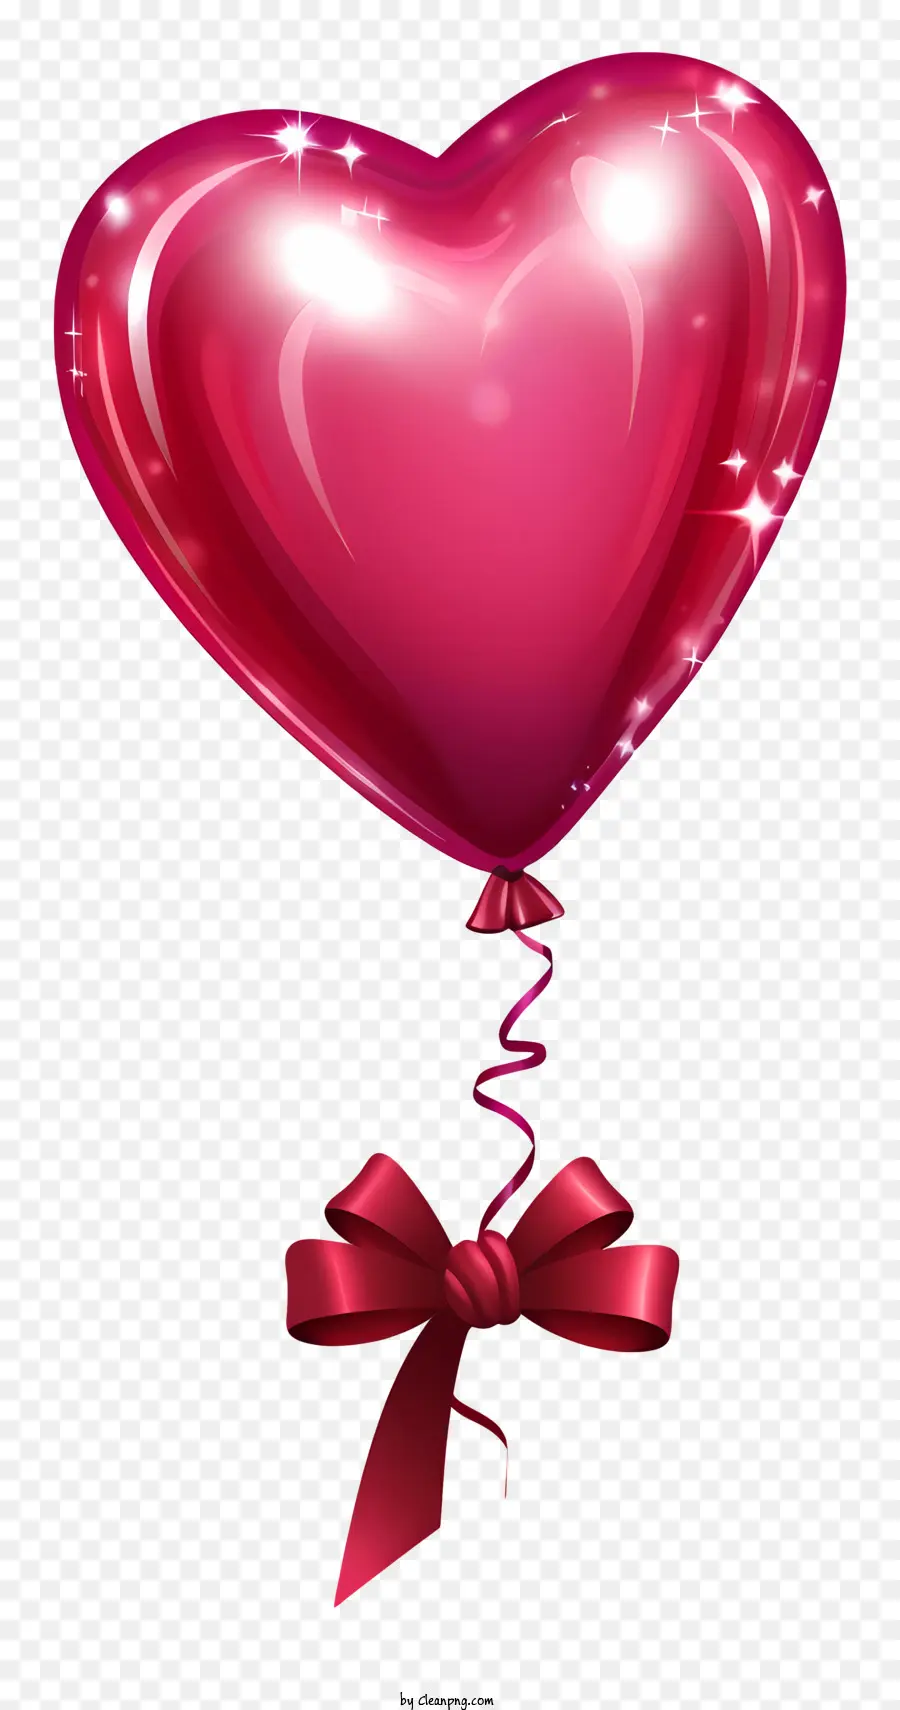 rosa Ballon - Pinkballon mit herzförmiger Bug spiegelt das Glück wider